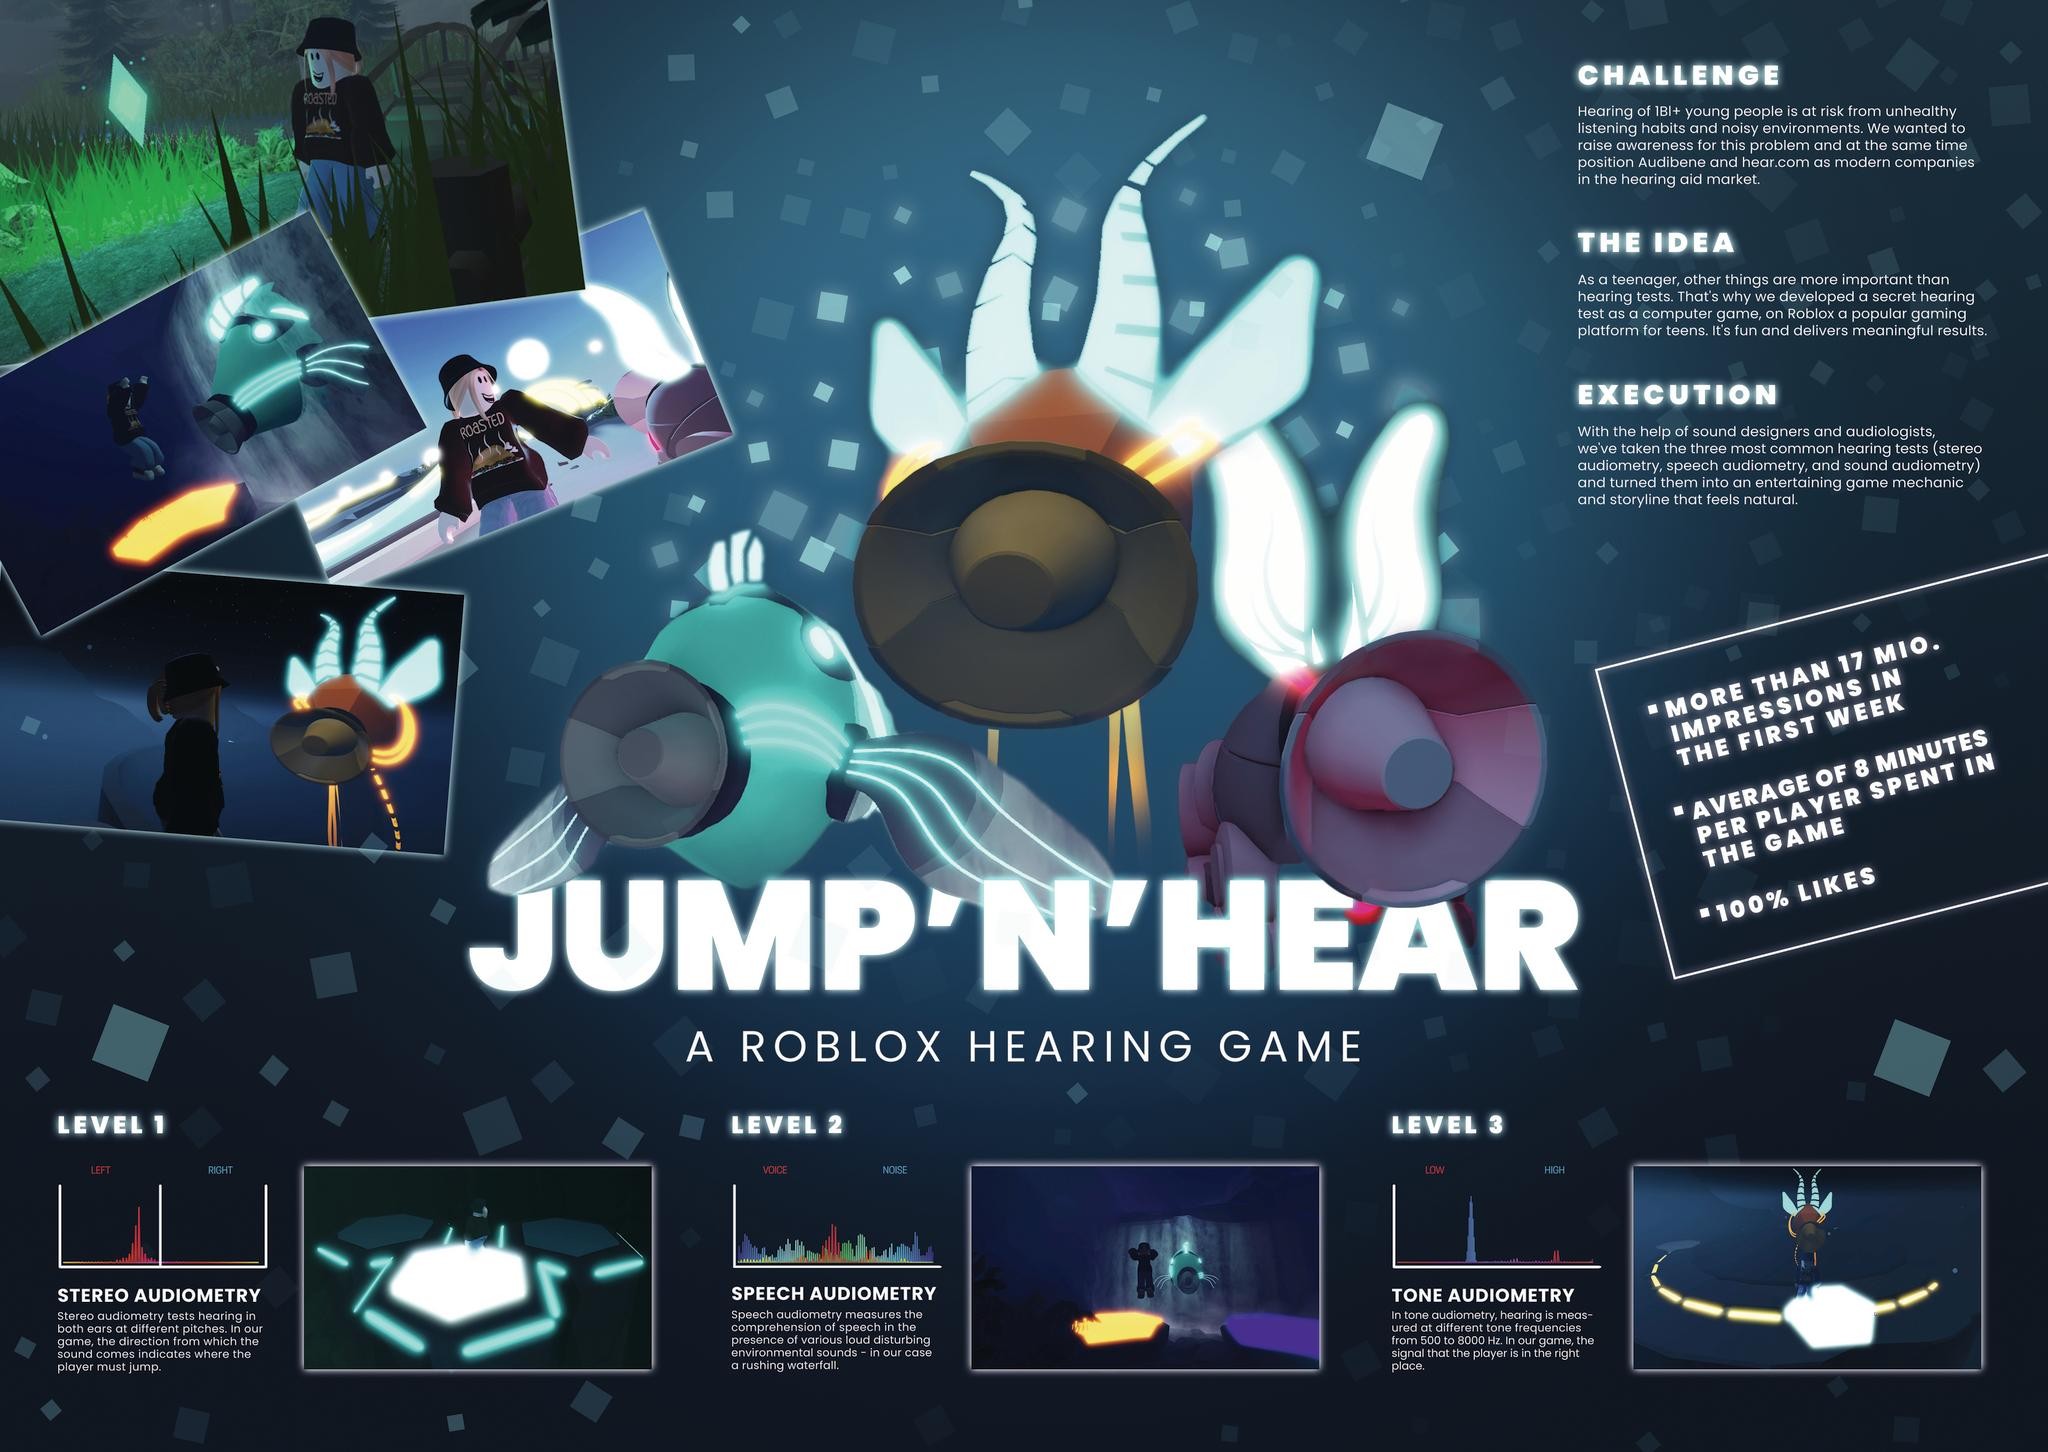 "JUMP ’N’ HEAR – A ROBLOX HEARING GAME."